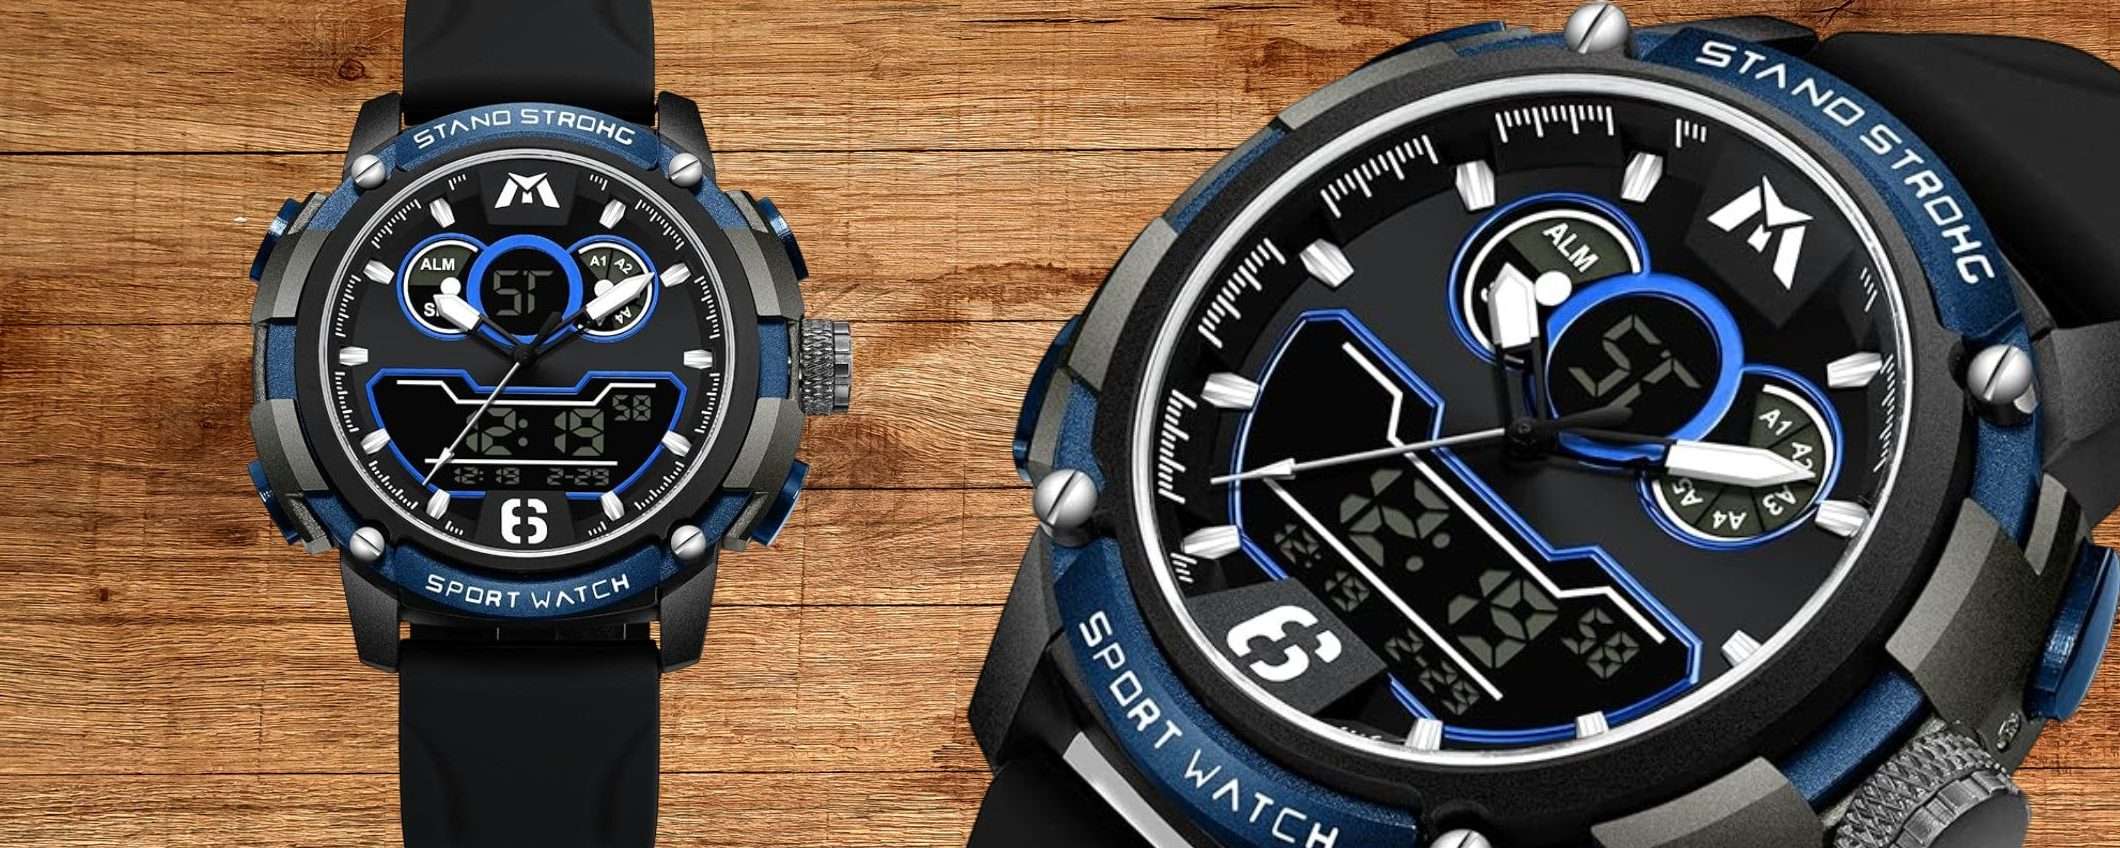 Bastano 9,99€ su Amazon per questo bellissimo orologio digitale: sconto 73%